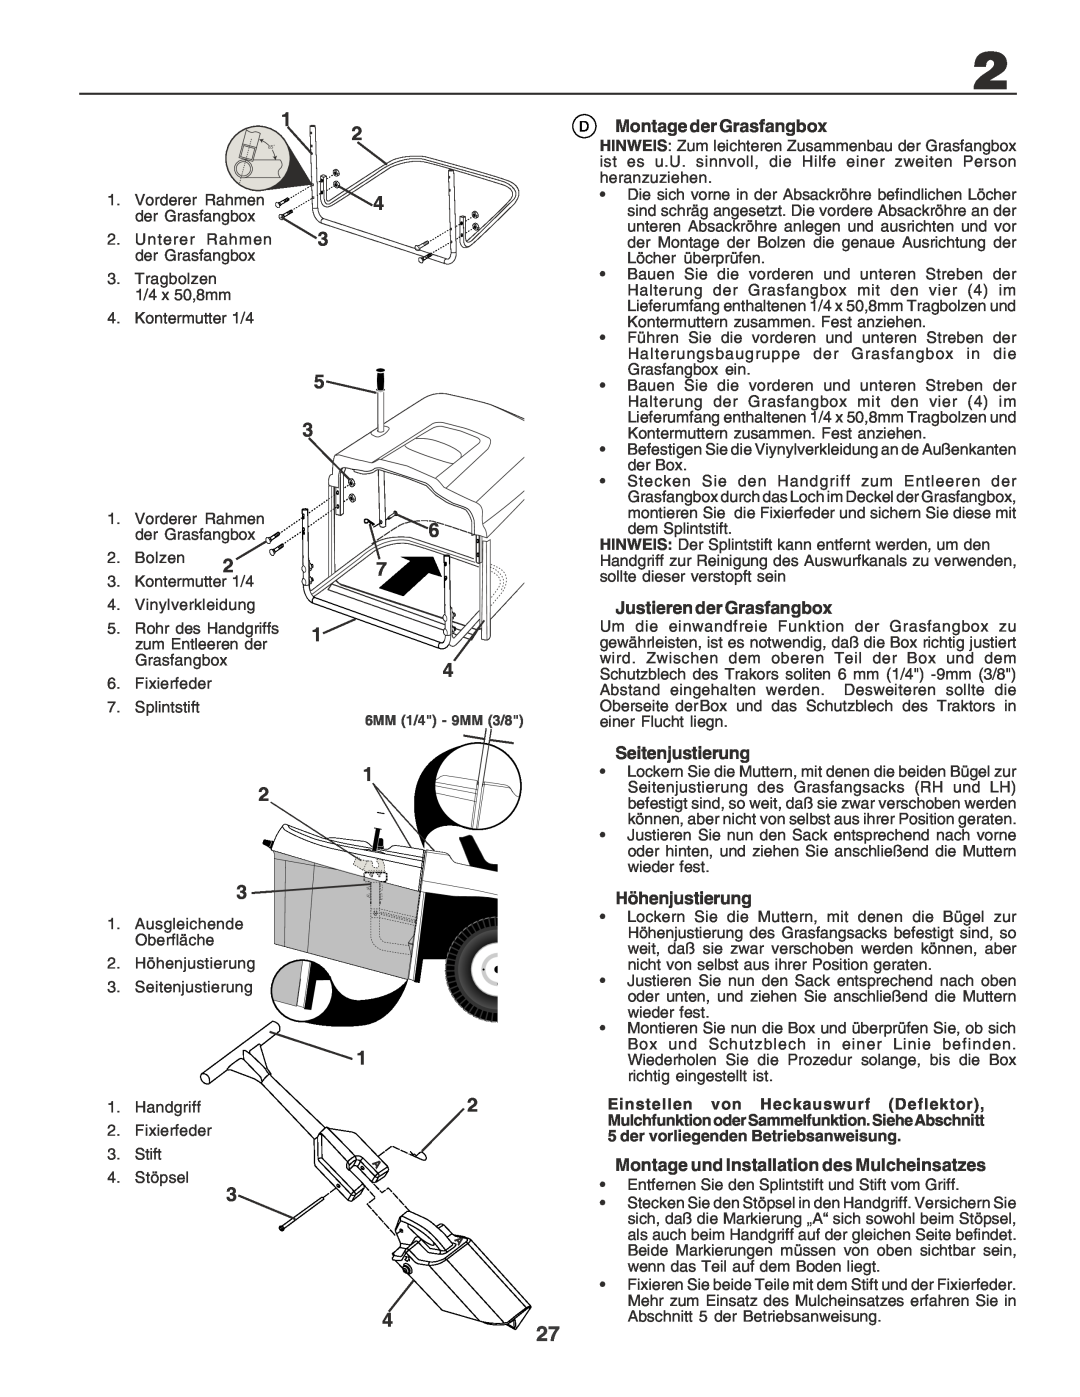 Husqvarna CTH170 instruction manual Montage der Grasfangbox, Justieren der Grasfangbox, Seitenjustierung, Höhenjustierung 